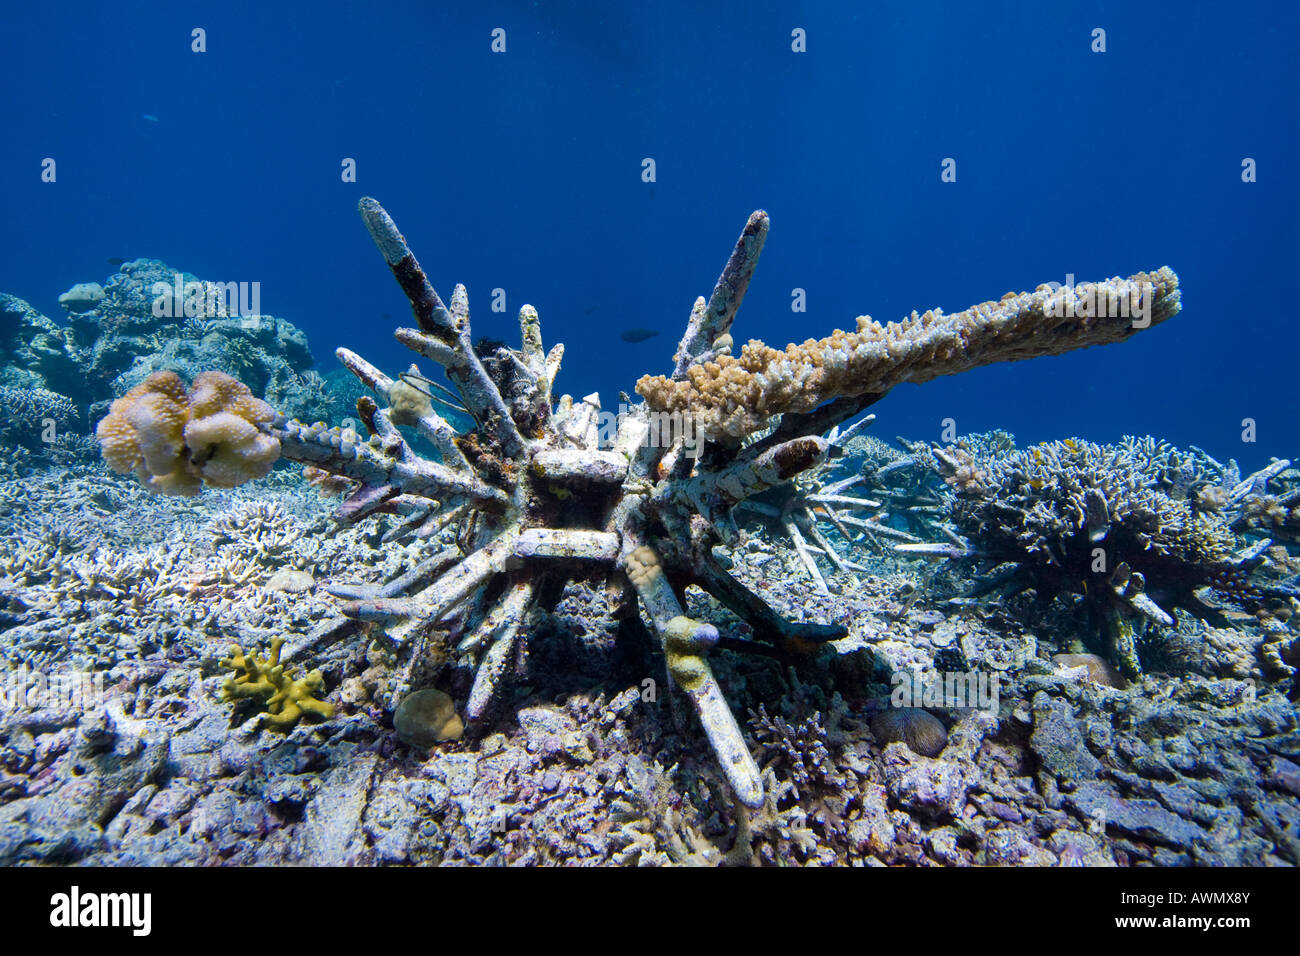 Programme de protection des récifs coralliens sur l'Indonésie dans le parc national de la marine Bunaken. De nouveaux récifs coralliens devraient venir par spécialement d Banque D'Images